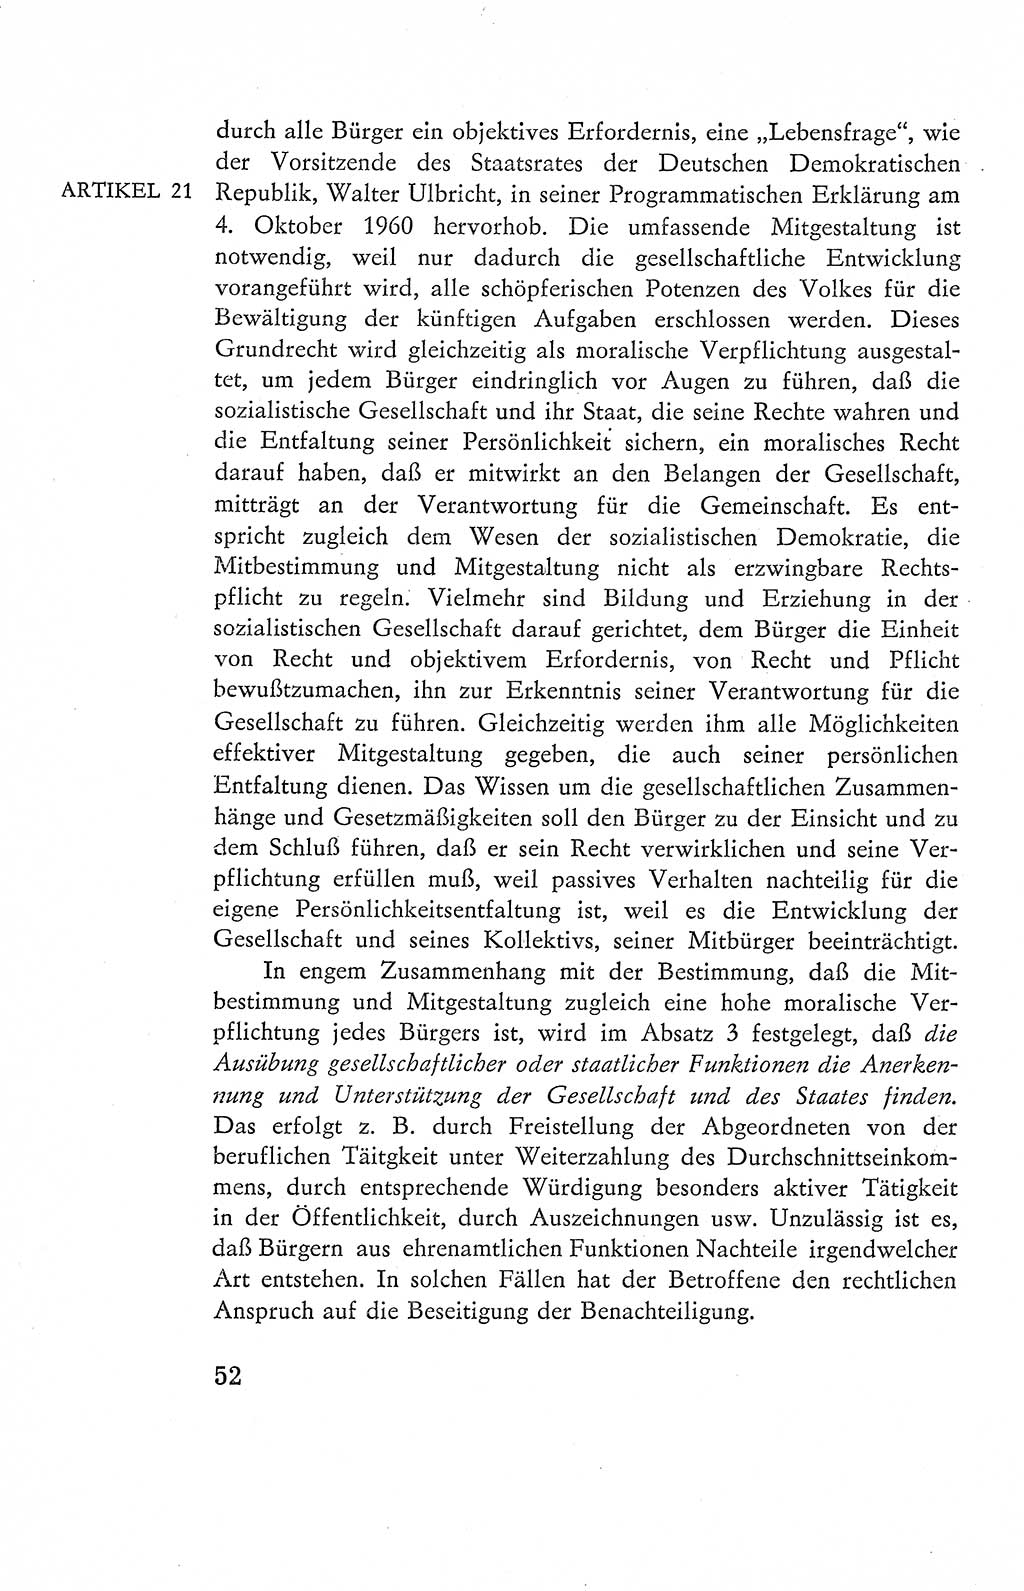 Verfassung der Deutschen Demokratischen Republik (DDR), Dokumente, Kommentar 1969, Band 2, Seite 52 (Verf. DDR Dok. Komm. 1969, Bd. 2, S. 52)